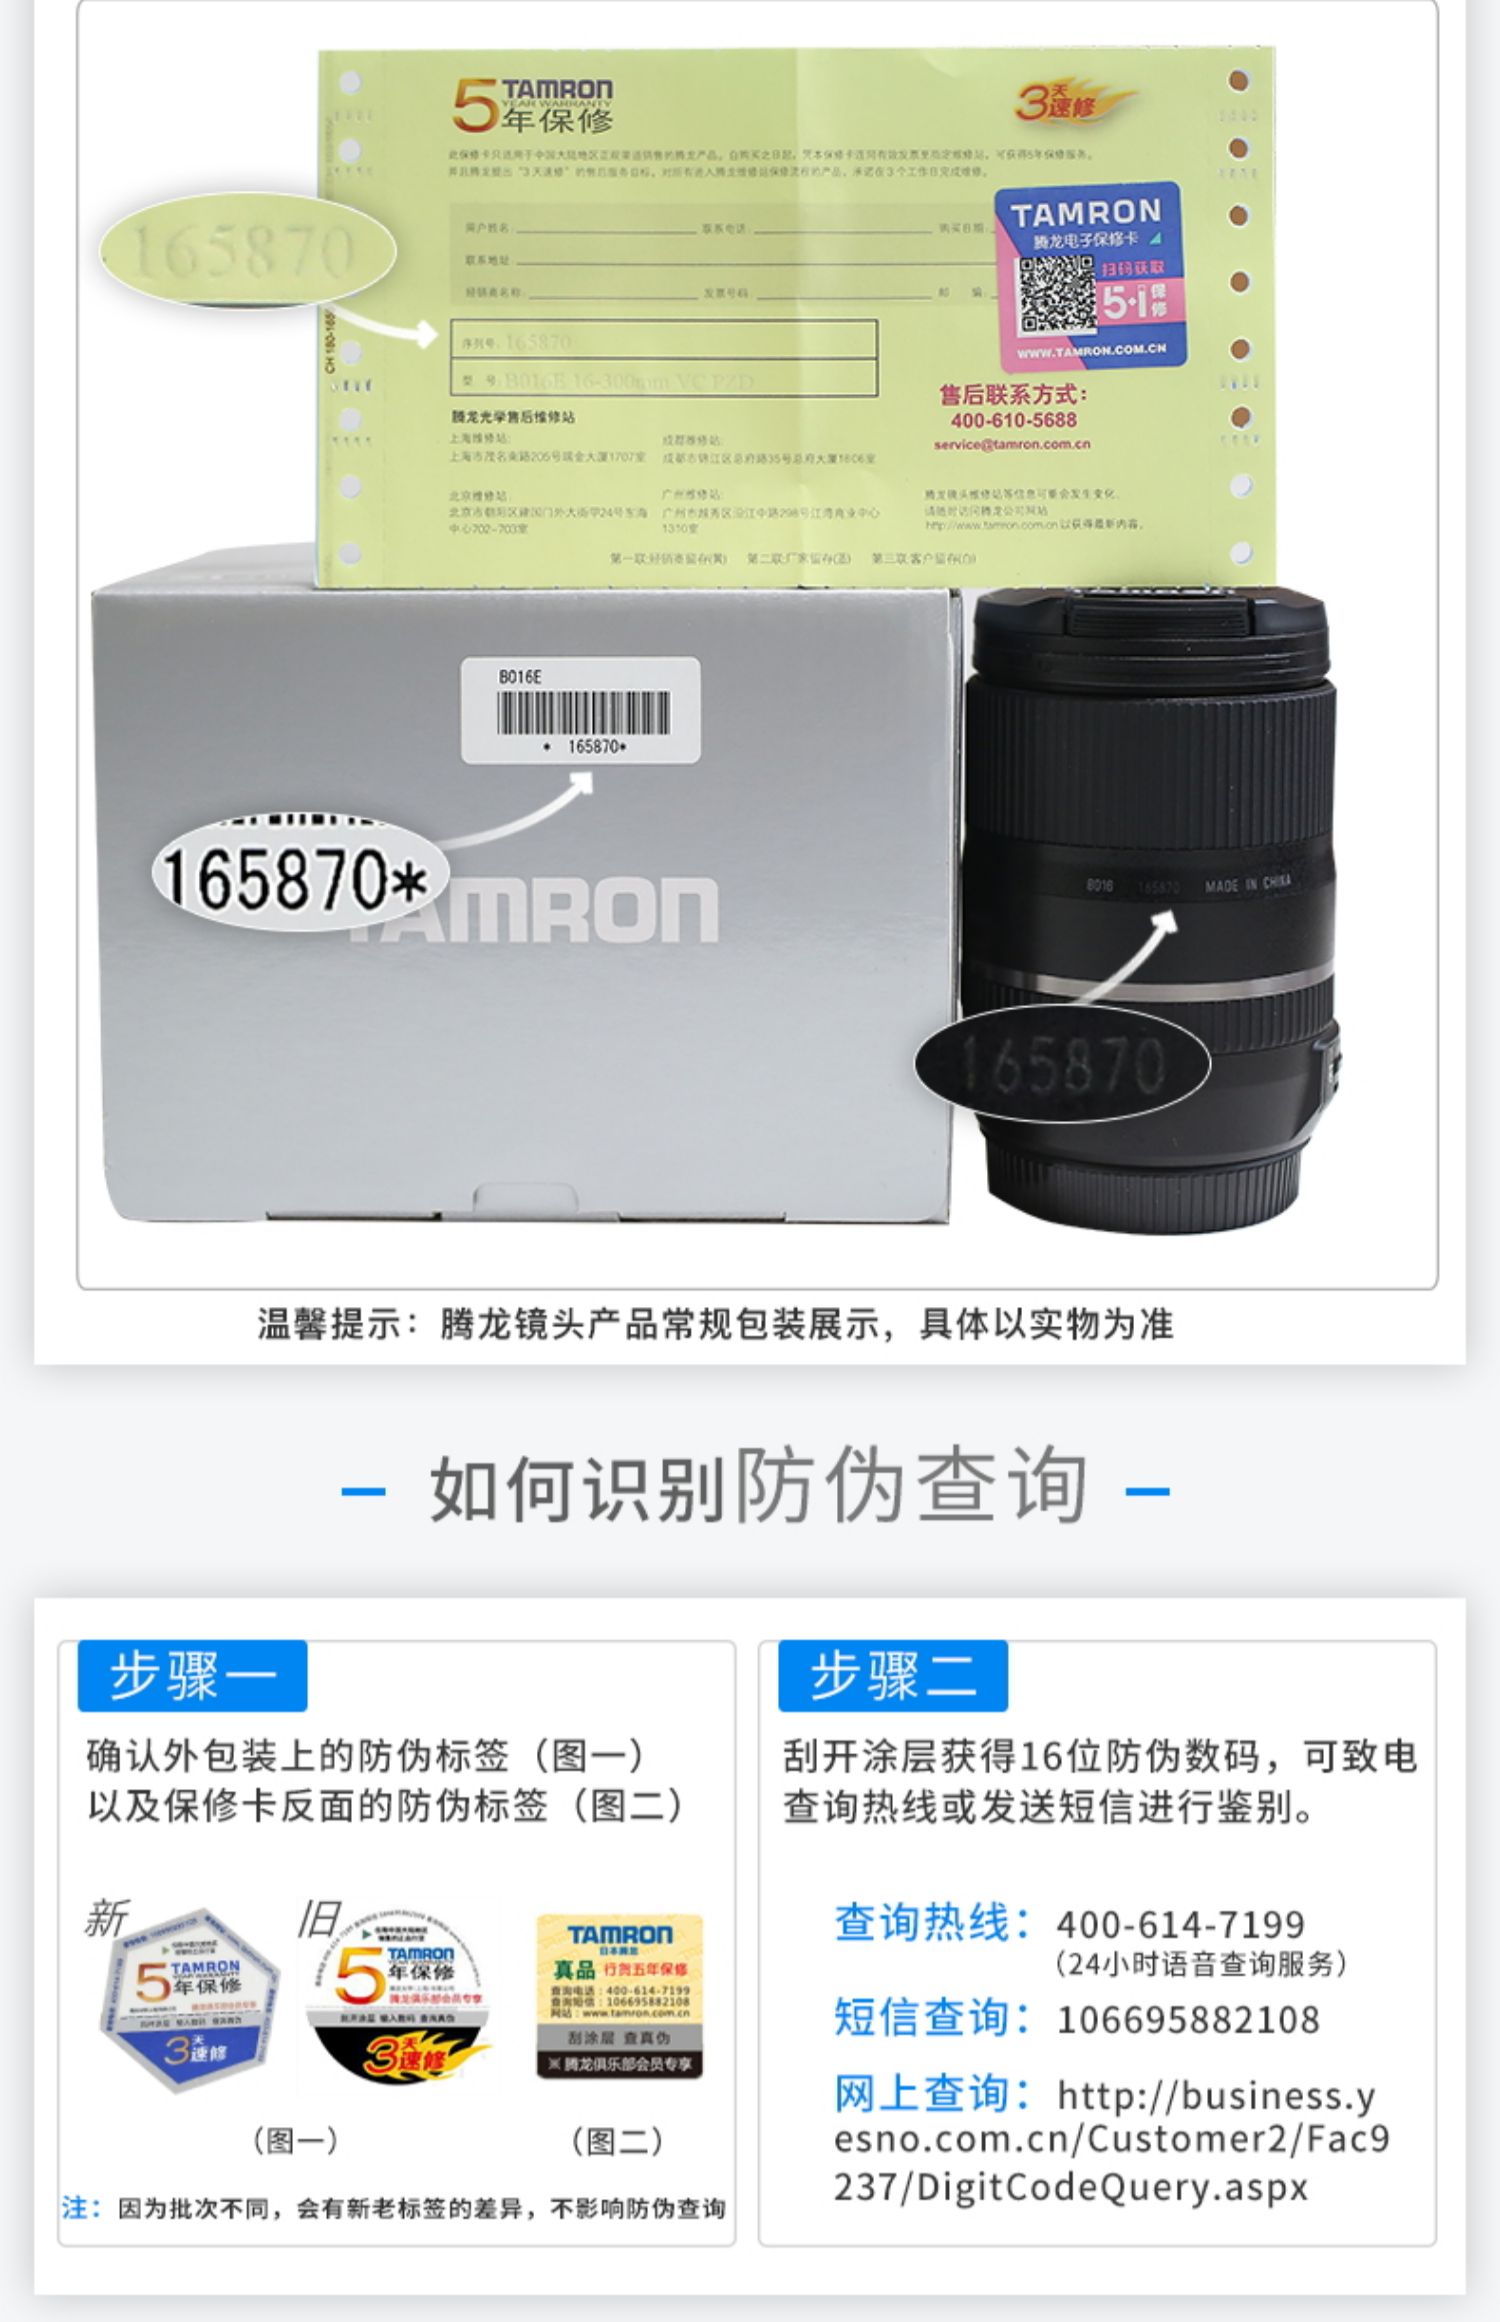 Gửi gương UV Tamron 28-300mm VC A010 Chống rung ống kính góc rộng Telephoto zoom toàn khung hình Canon Canon miệng